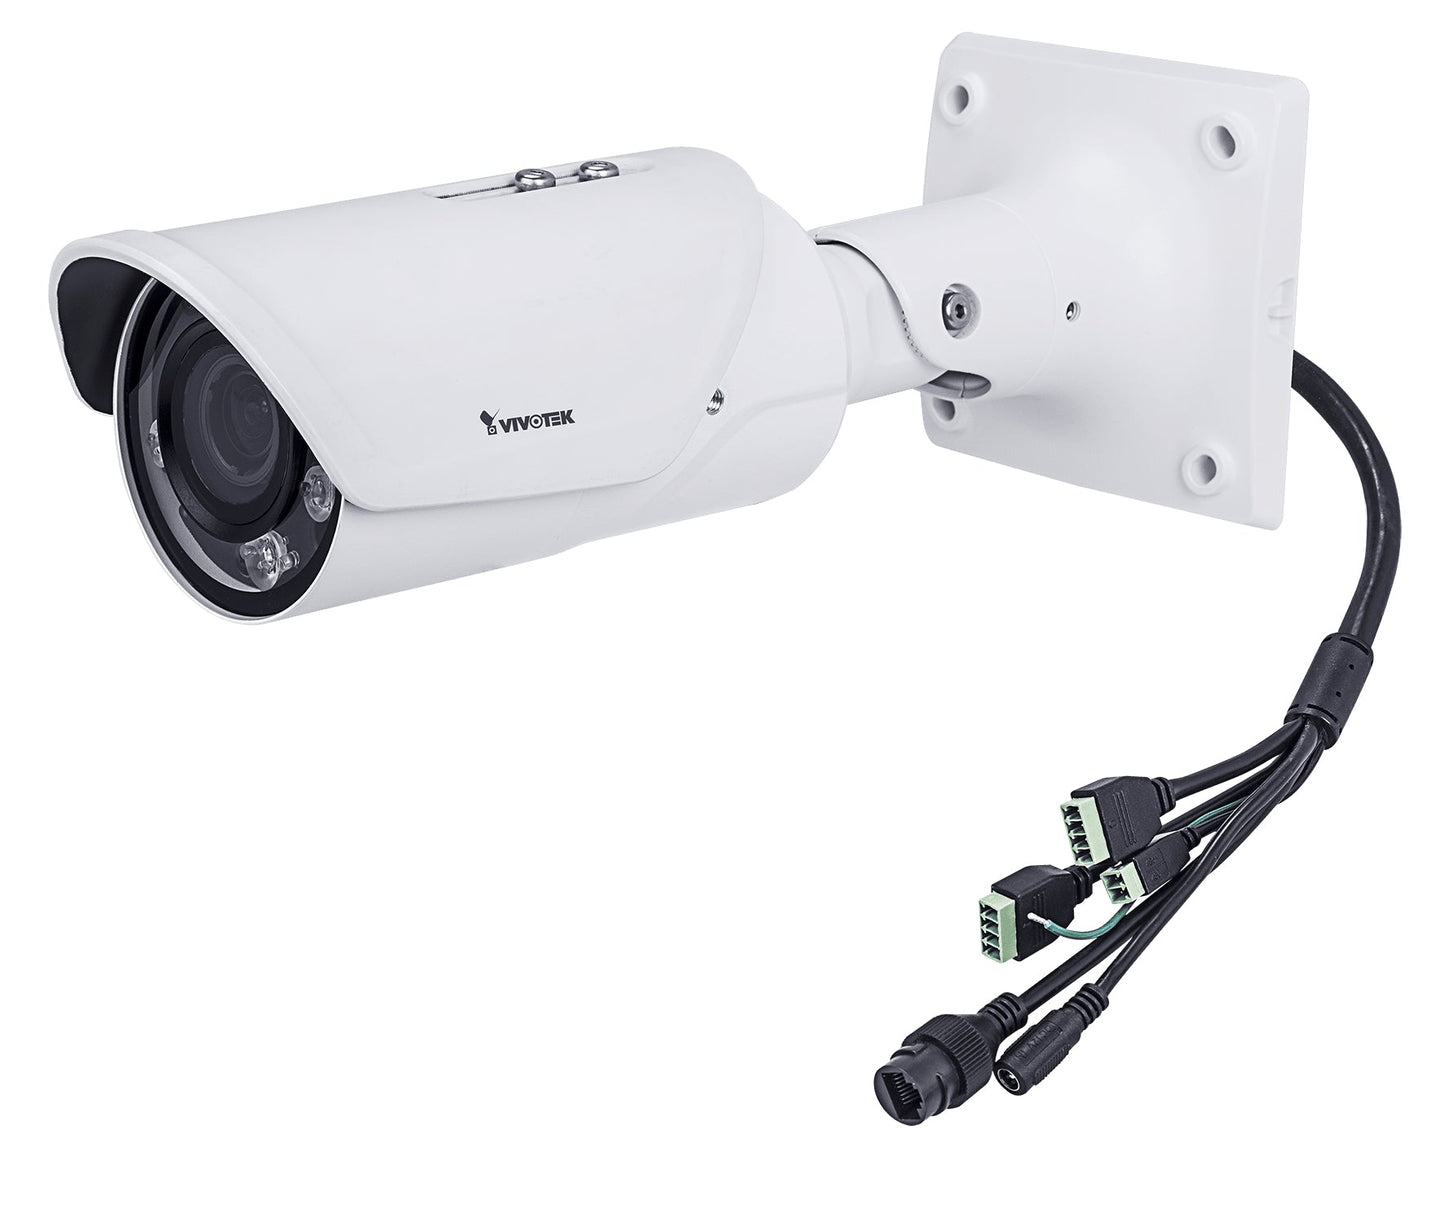 Vivotek Ib9367-Eht Security Camera Ip Security Camera Outdoor Bullet 1920 X 1080 Pixels Ceiling/Wall